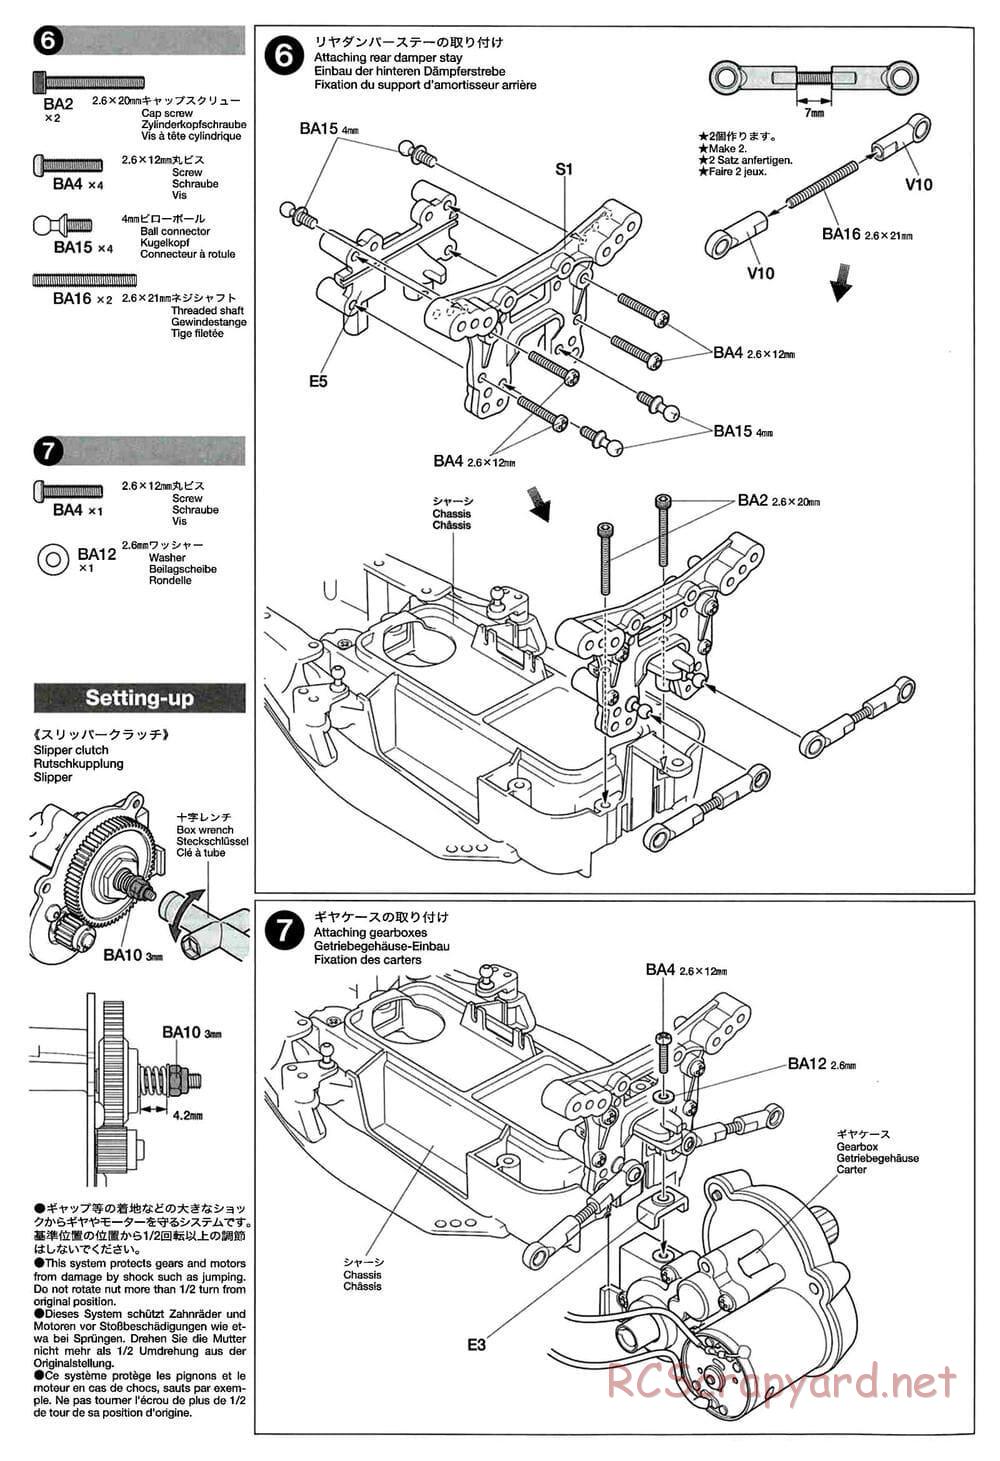 Tamiya - GT-01 Chassis - Manual - Page 6